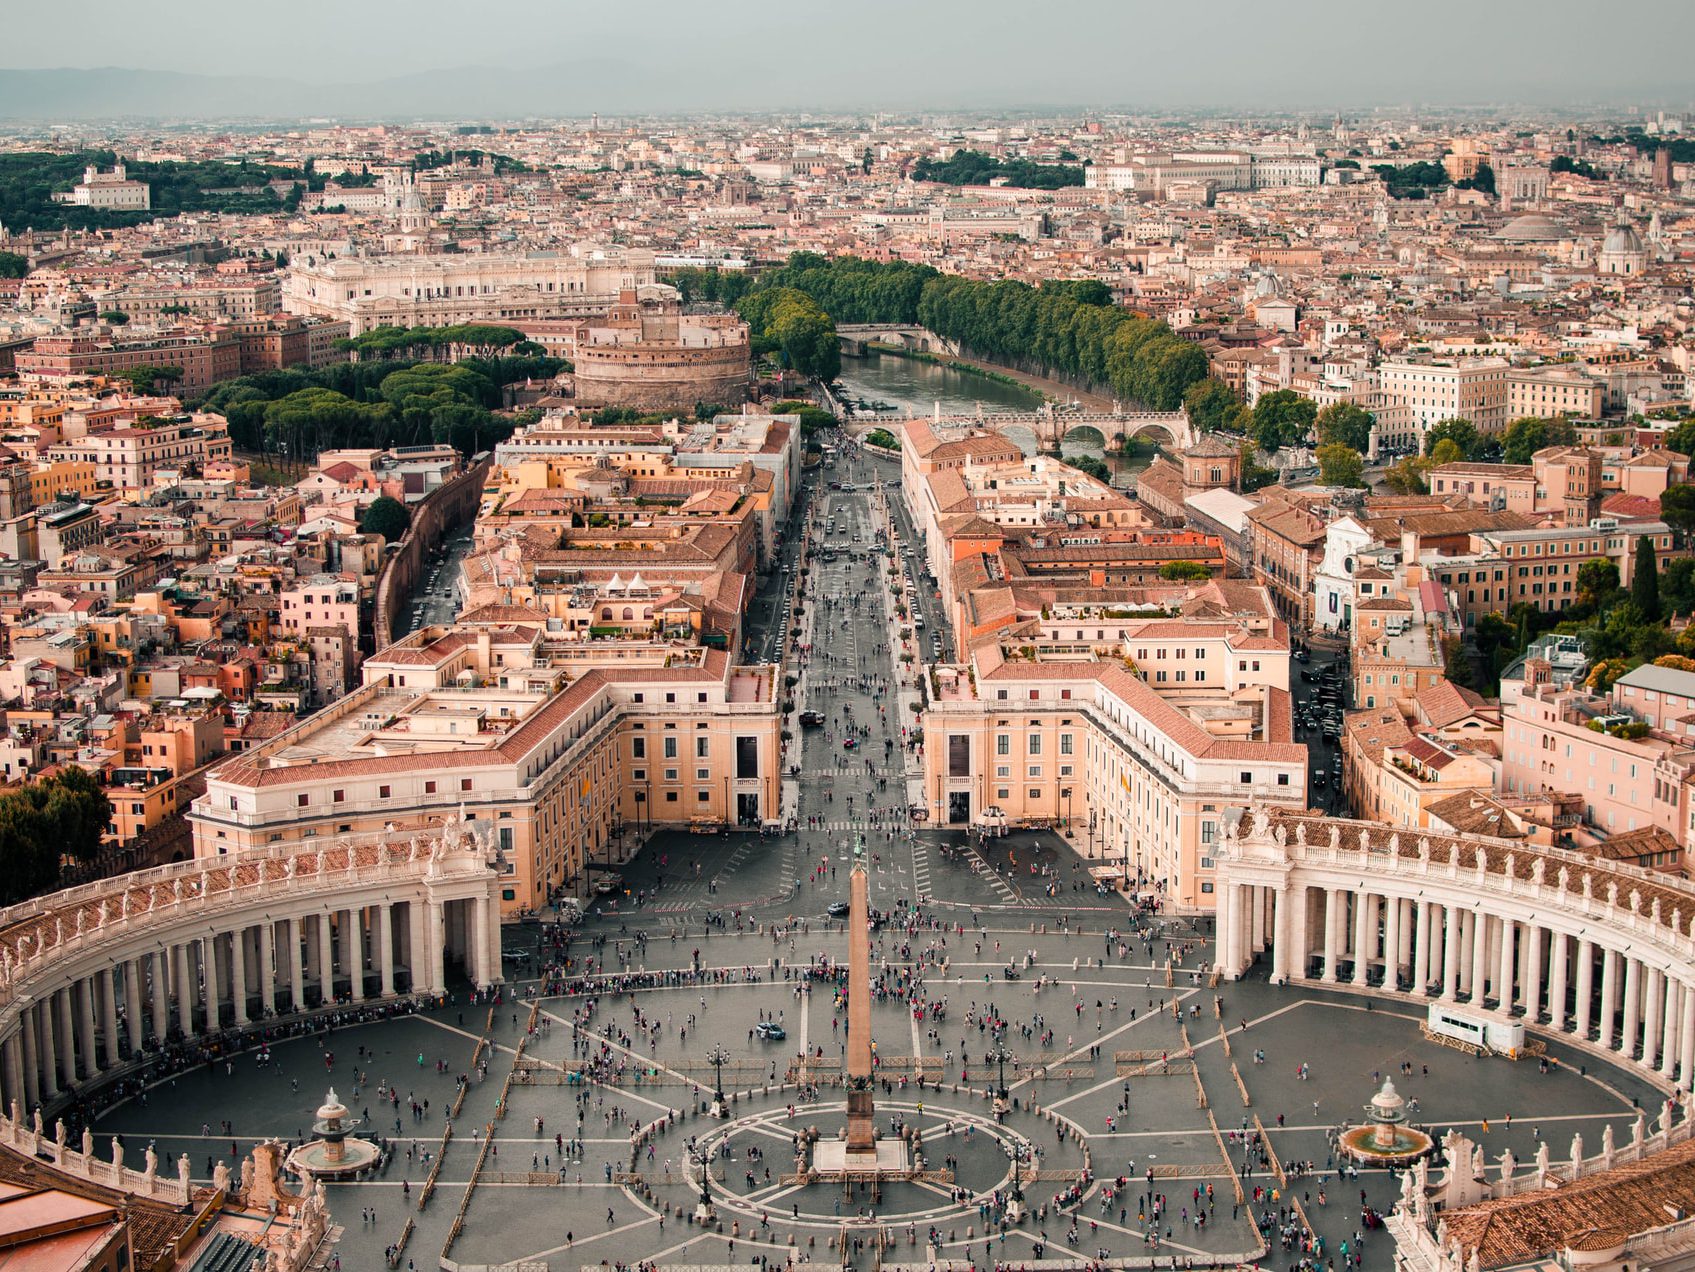 Picturesque Vatican